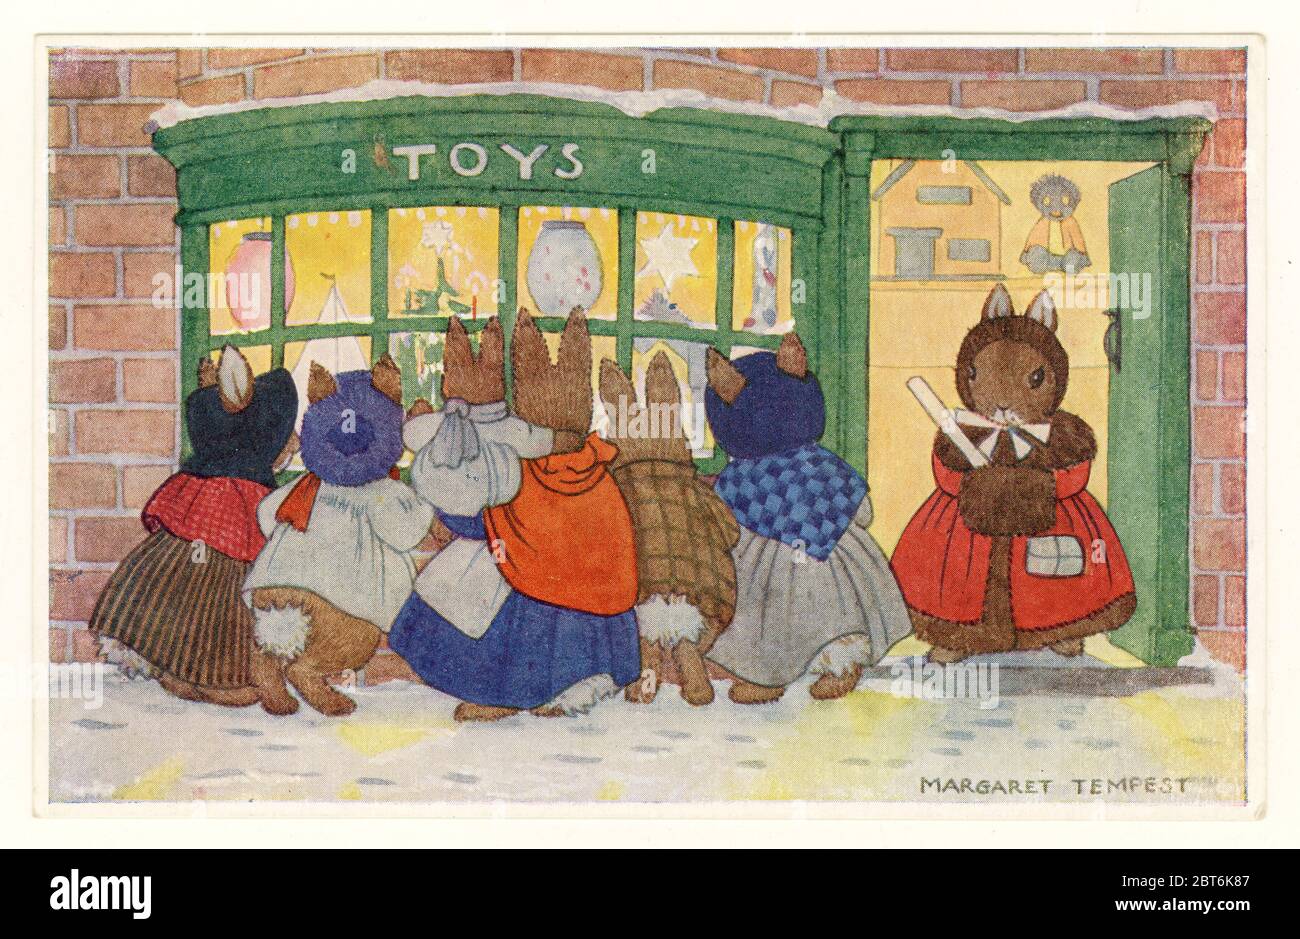 Carte postale de voeux originale illustration de lapins dans des vêtements regardant dans la fenêtre de la boutique de jouets, 'The Toy Shop', Royaume-Uni, vers 1940 Banque D'Images